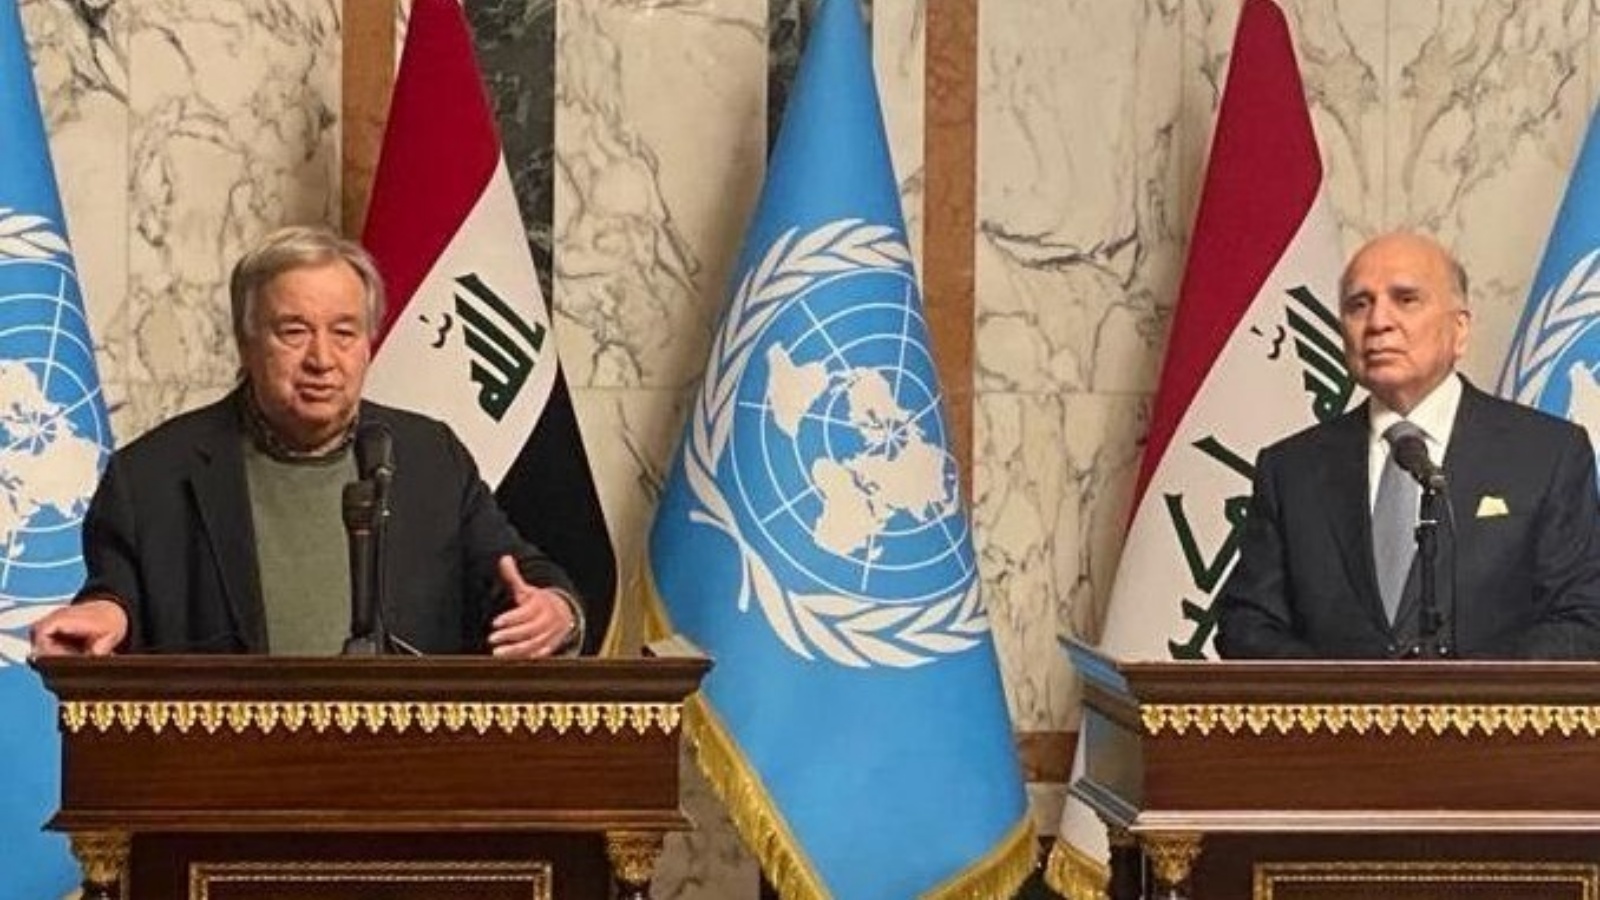 غوتيريش خلال مؤتمره الصحافي مع وزير الخارجية العراقي لدى وصوله الى بغداد الاربعاء في زيارة رسمية هي الثانية له منذ عام 2017 (وكالة نينا)